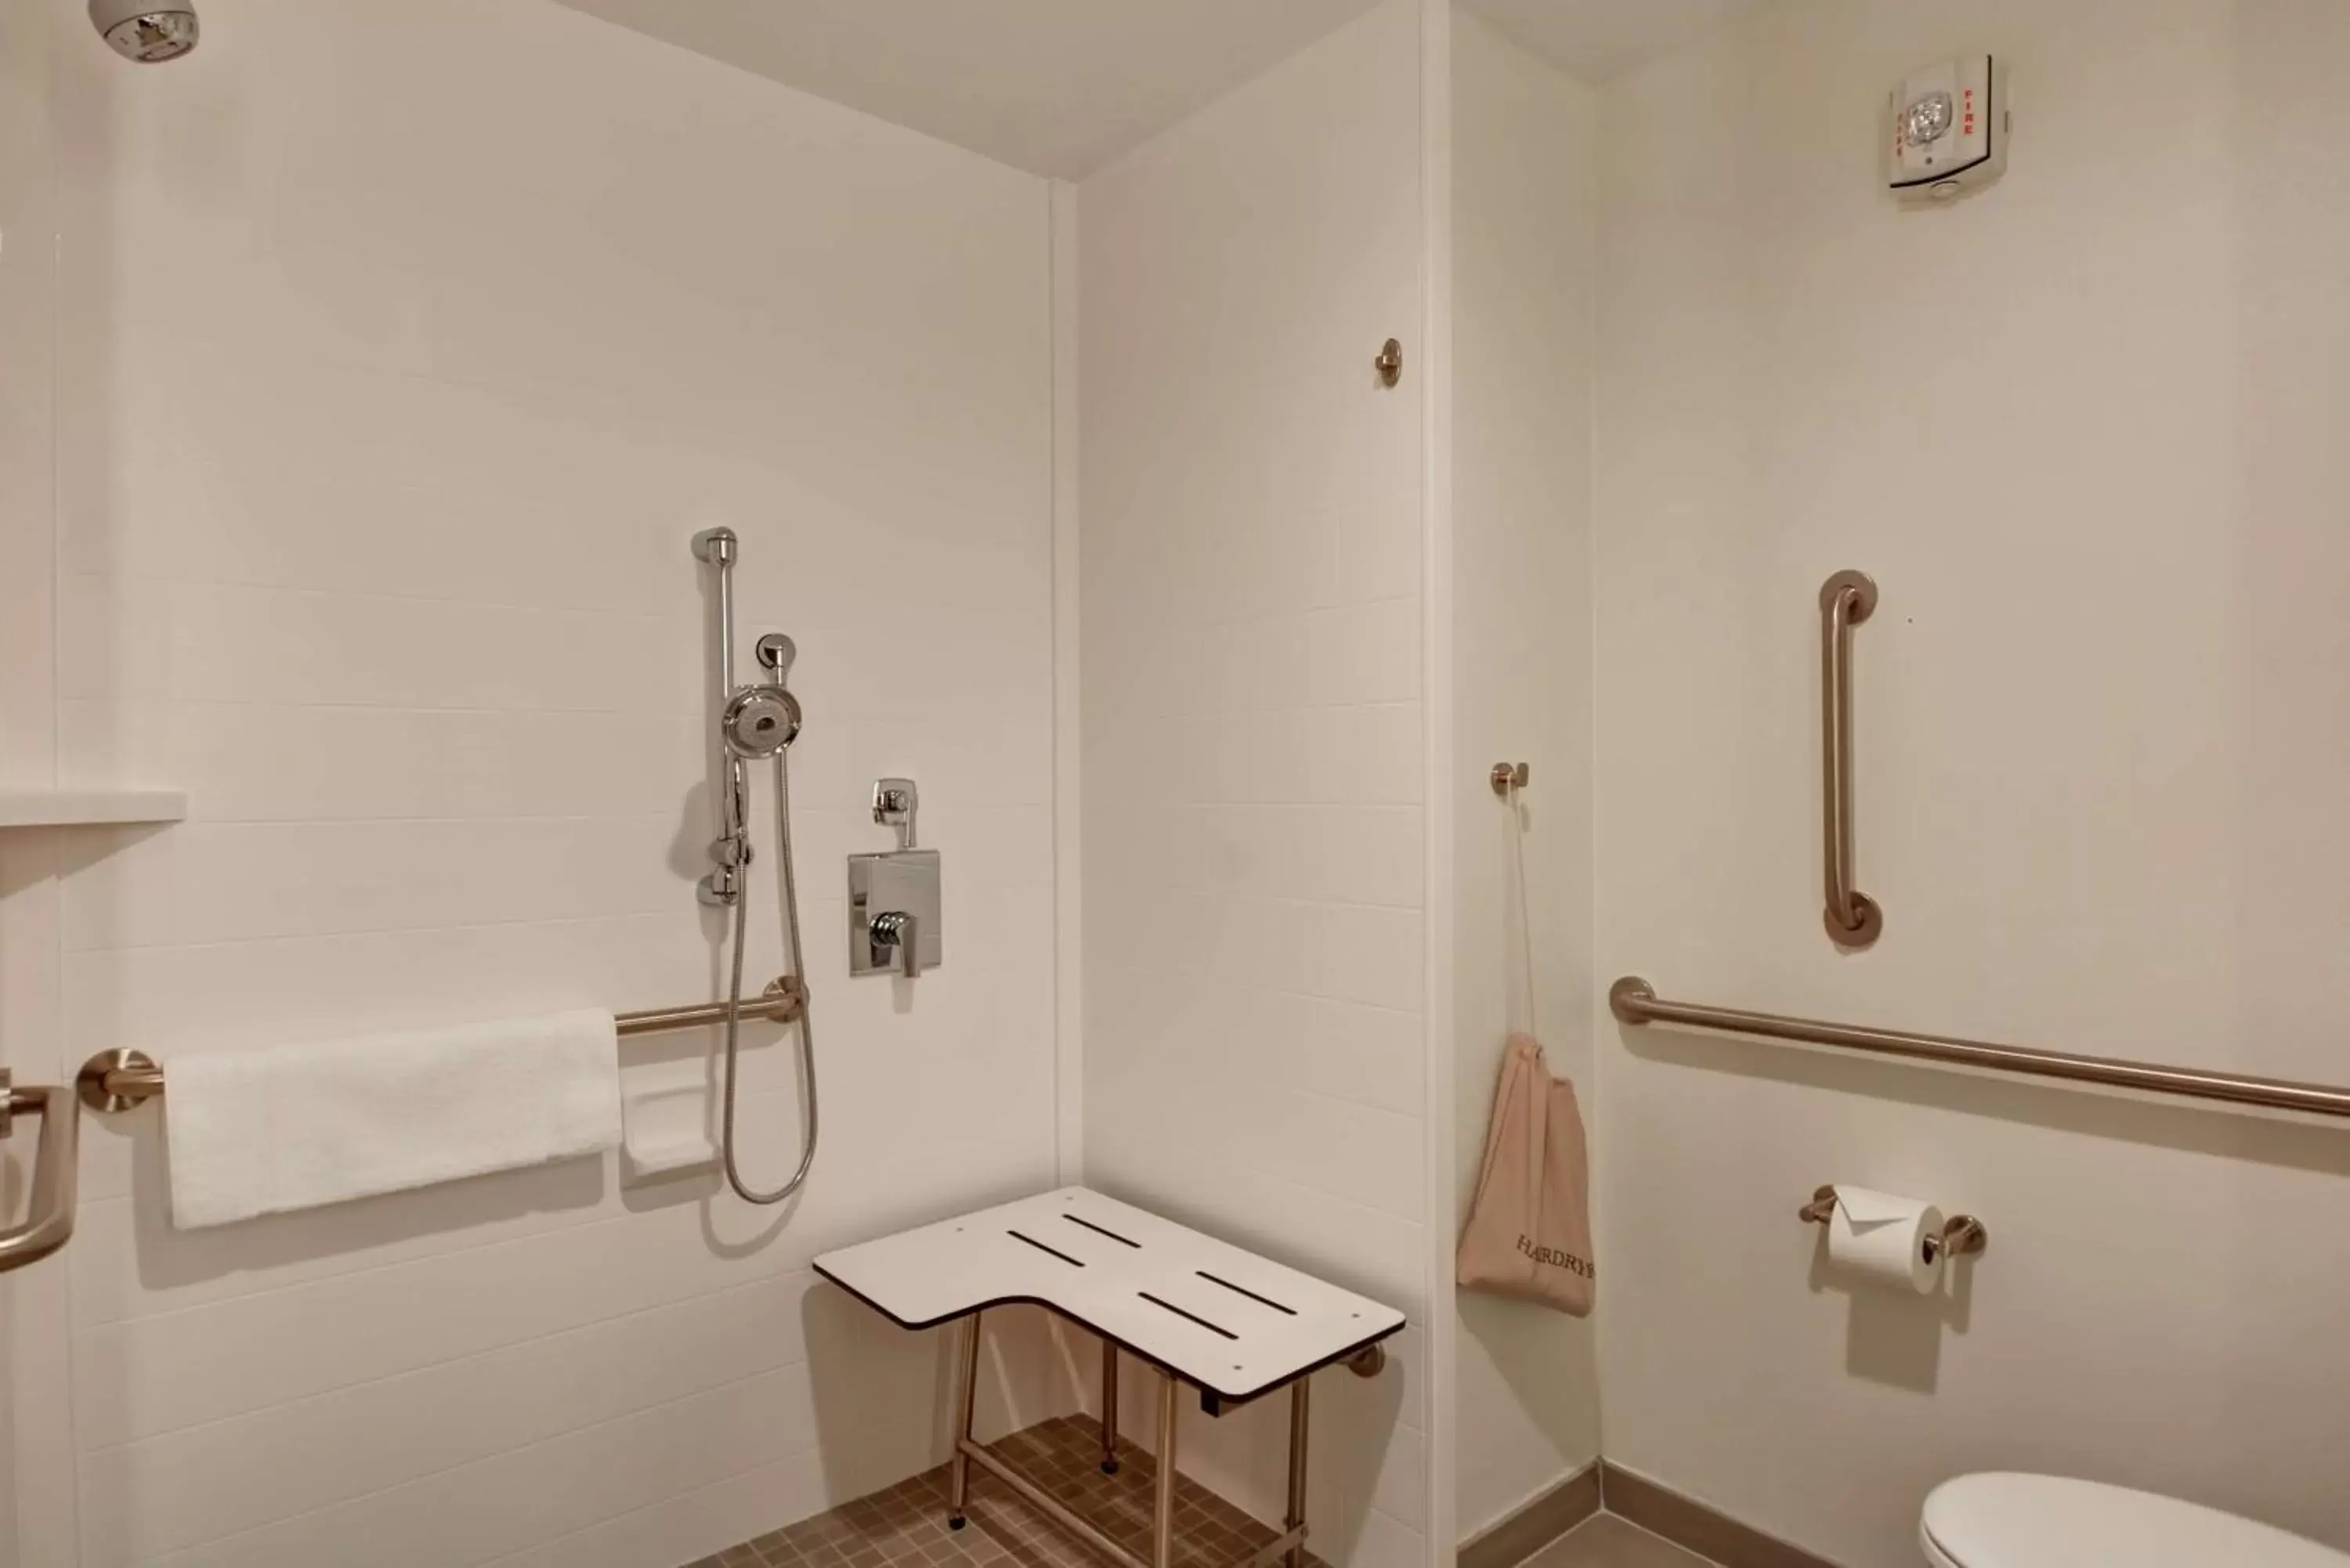 Bathroom in Hilton Garden Inn Biloxi